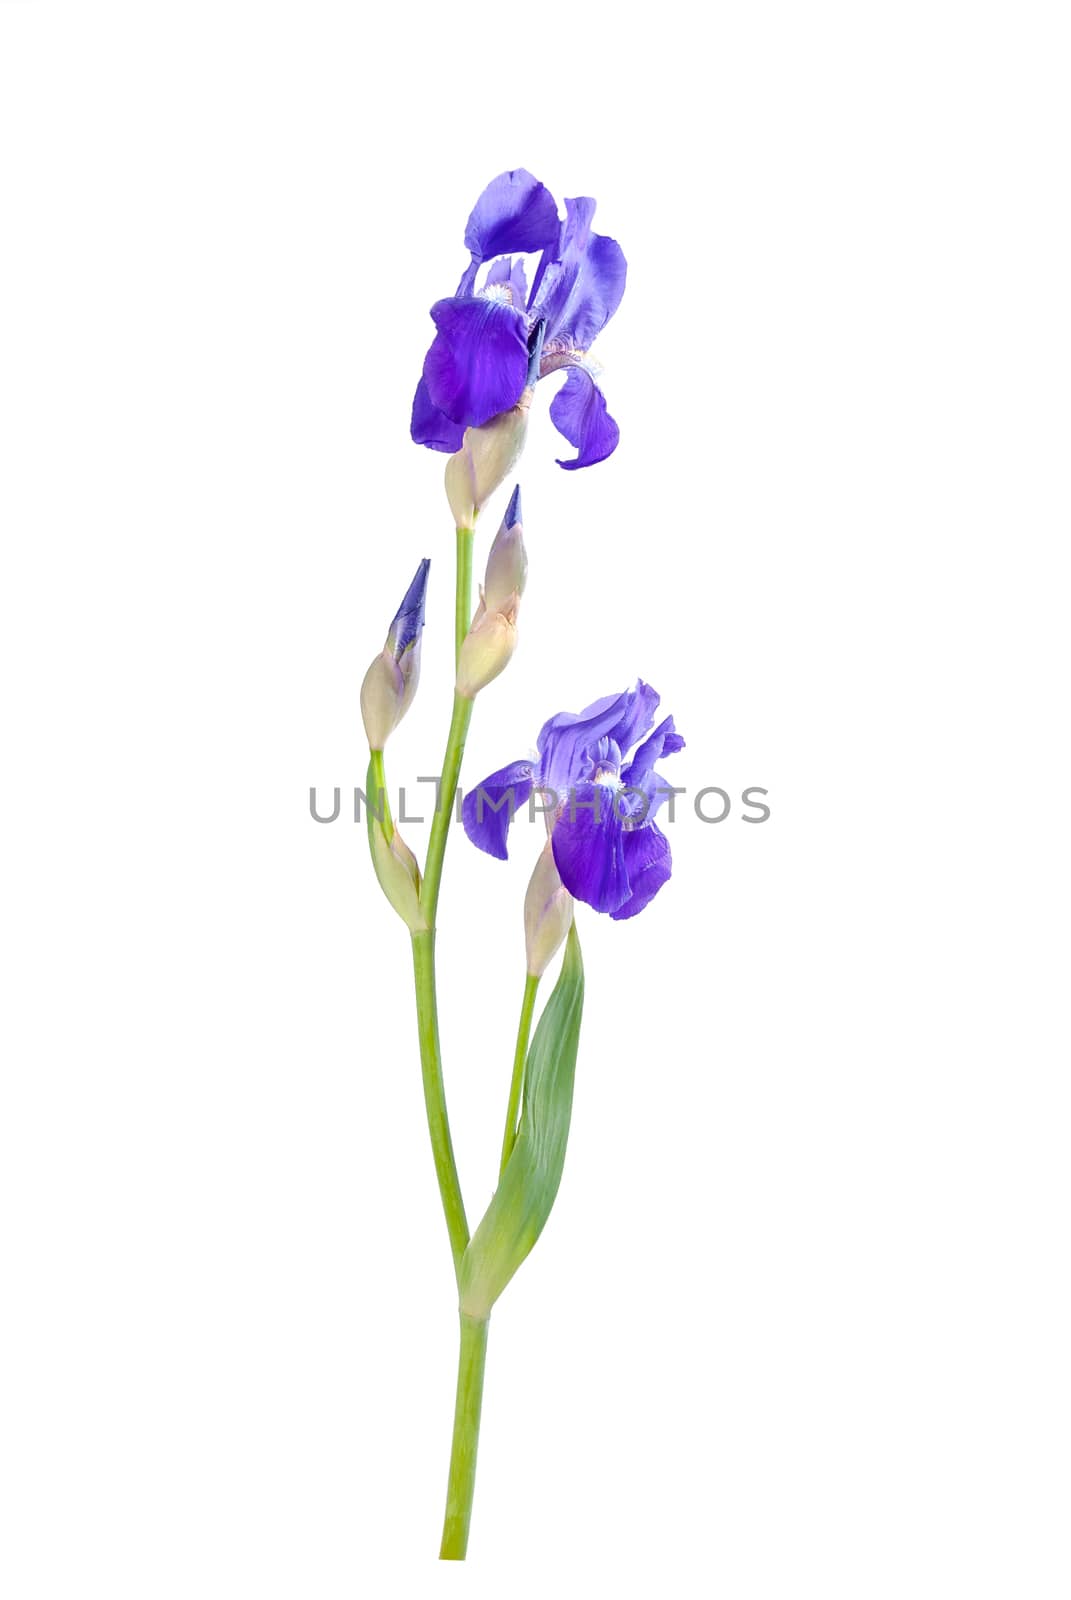 Iris flower 02 by firewings